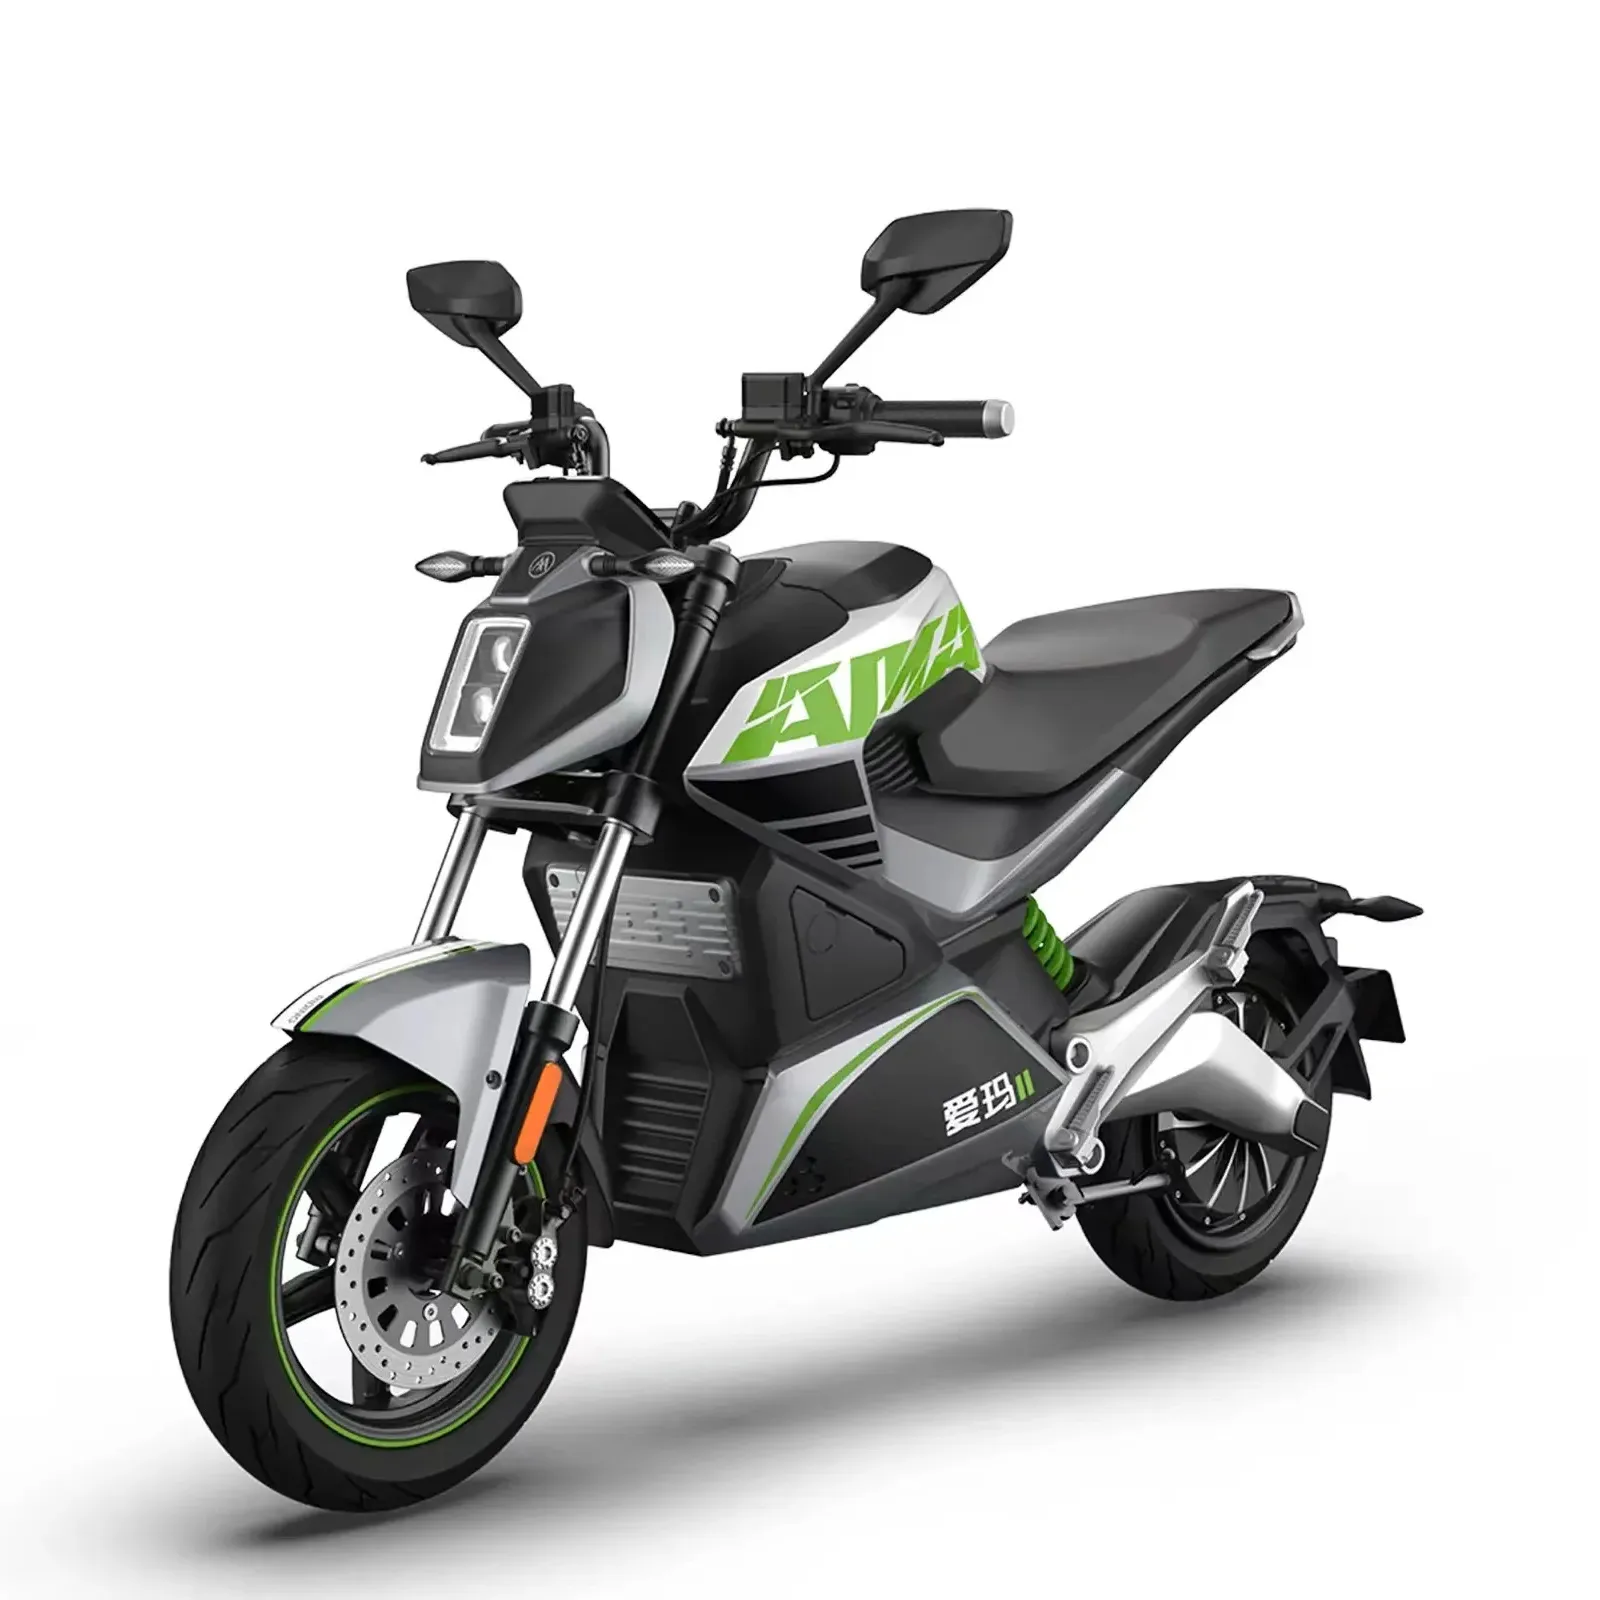 Motocicletta elettrica a buon mercato 2024 Emma Dream Maker è dotata di un motore ad alte prestazioni da 2500W con forte potenza e 3 modalità di guida